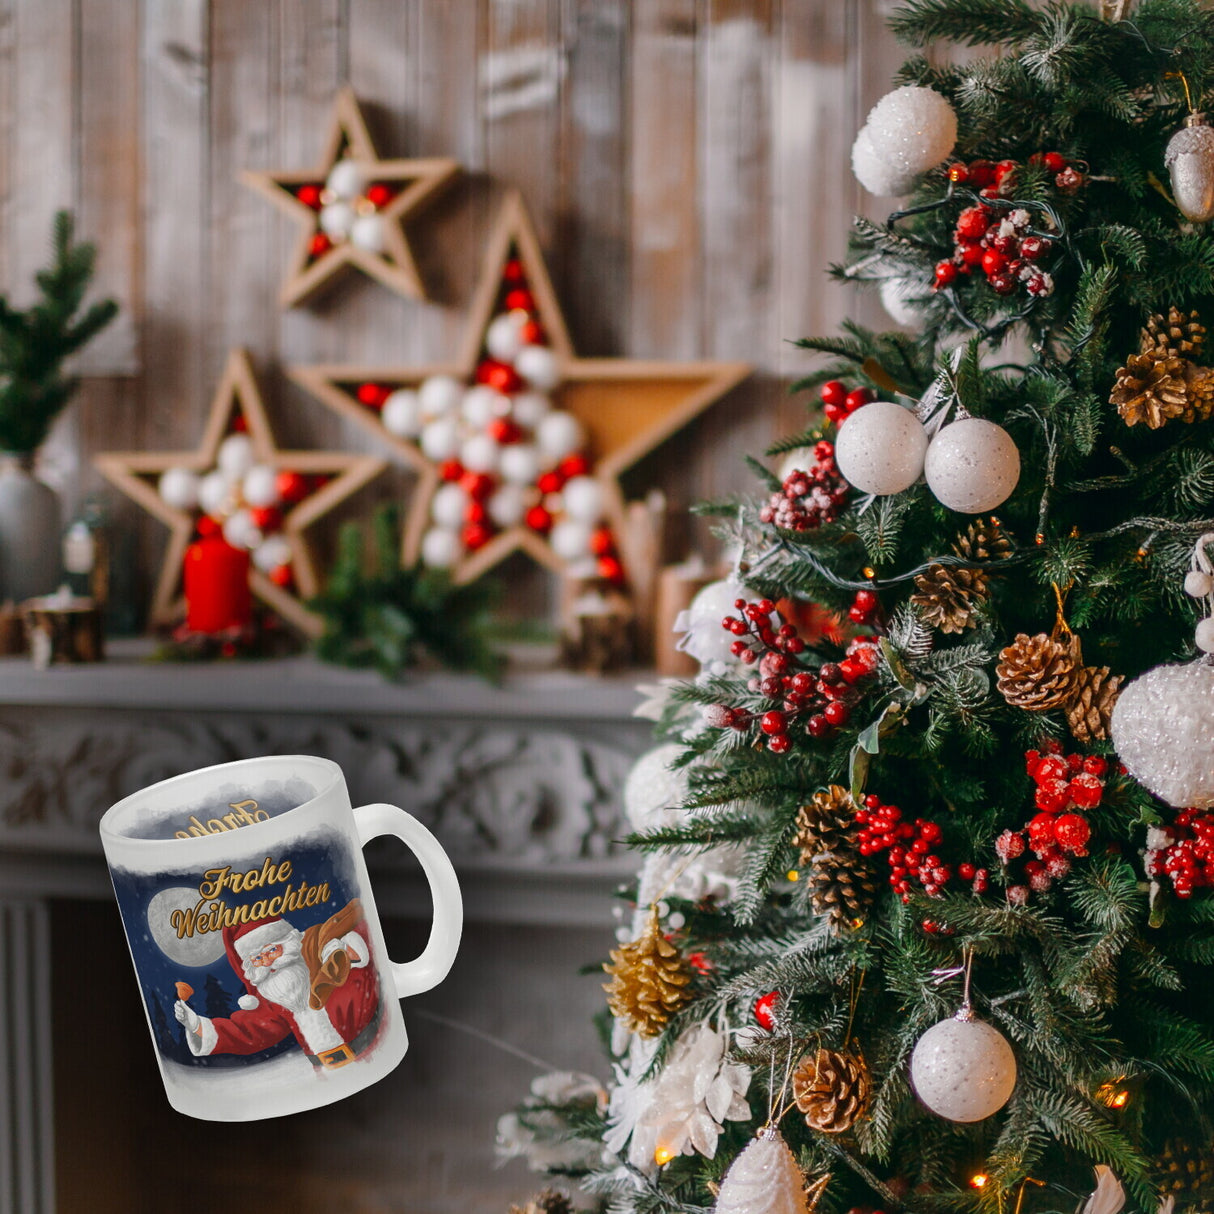 Frohe Weihnachten mit Weihnachtsmann Kaffeebecher